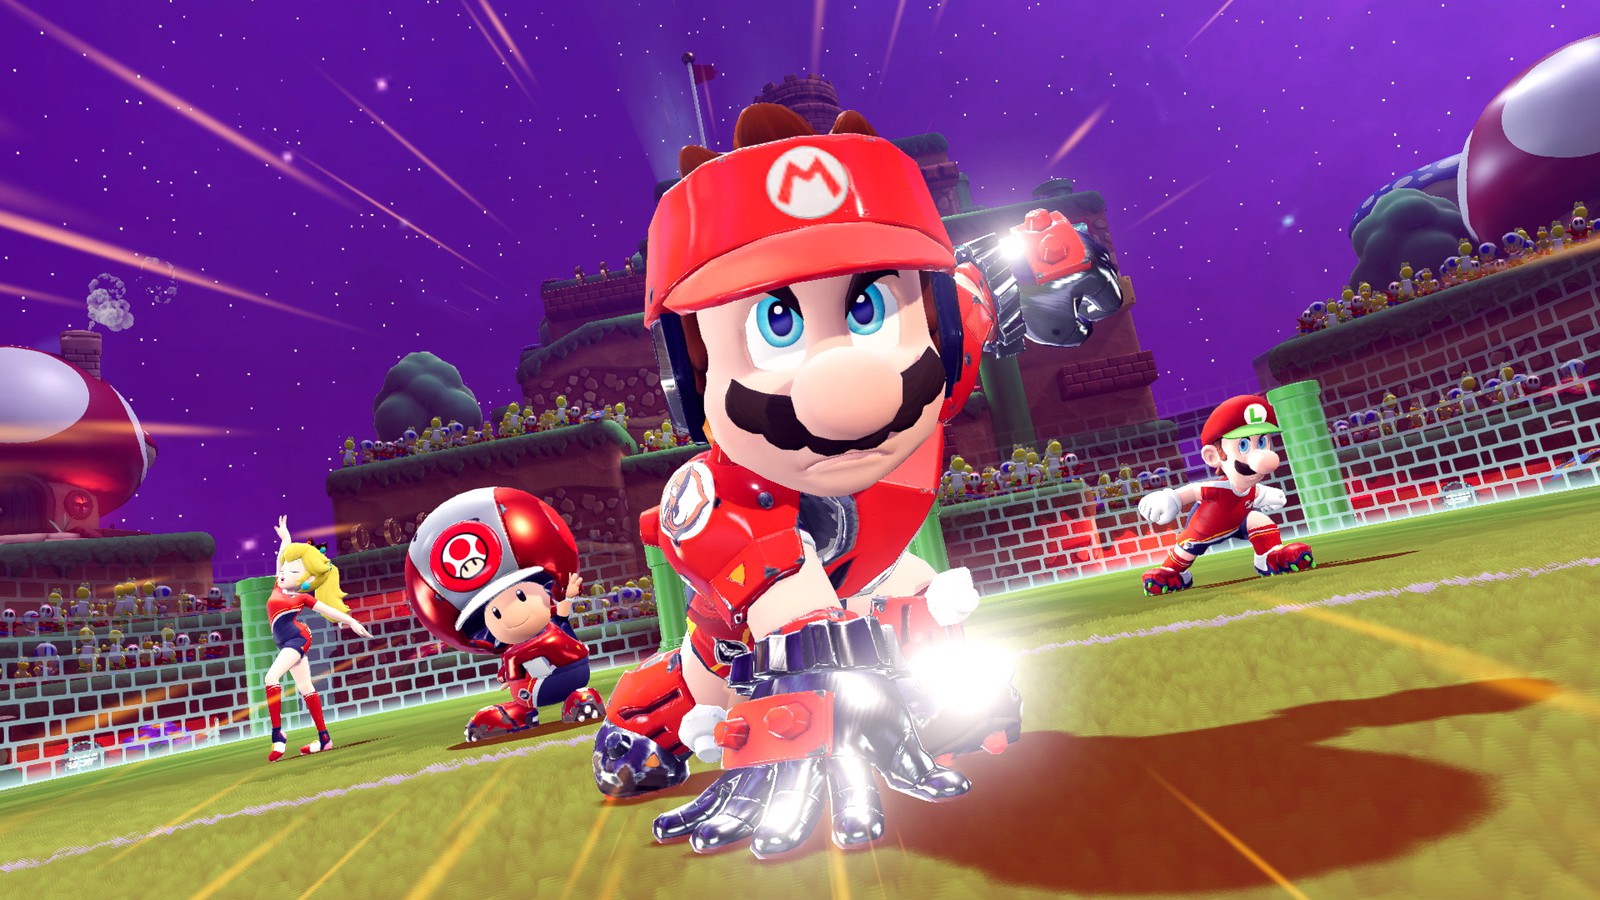 格闘技」×「サッカー」ルール無用の新スポーツ「ストライク」が開幕。Nintendo Switch『マリオストライカーズ バトルリーグ』6月10日発売決定。  | トピックス | Nintendo